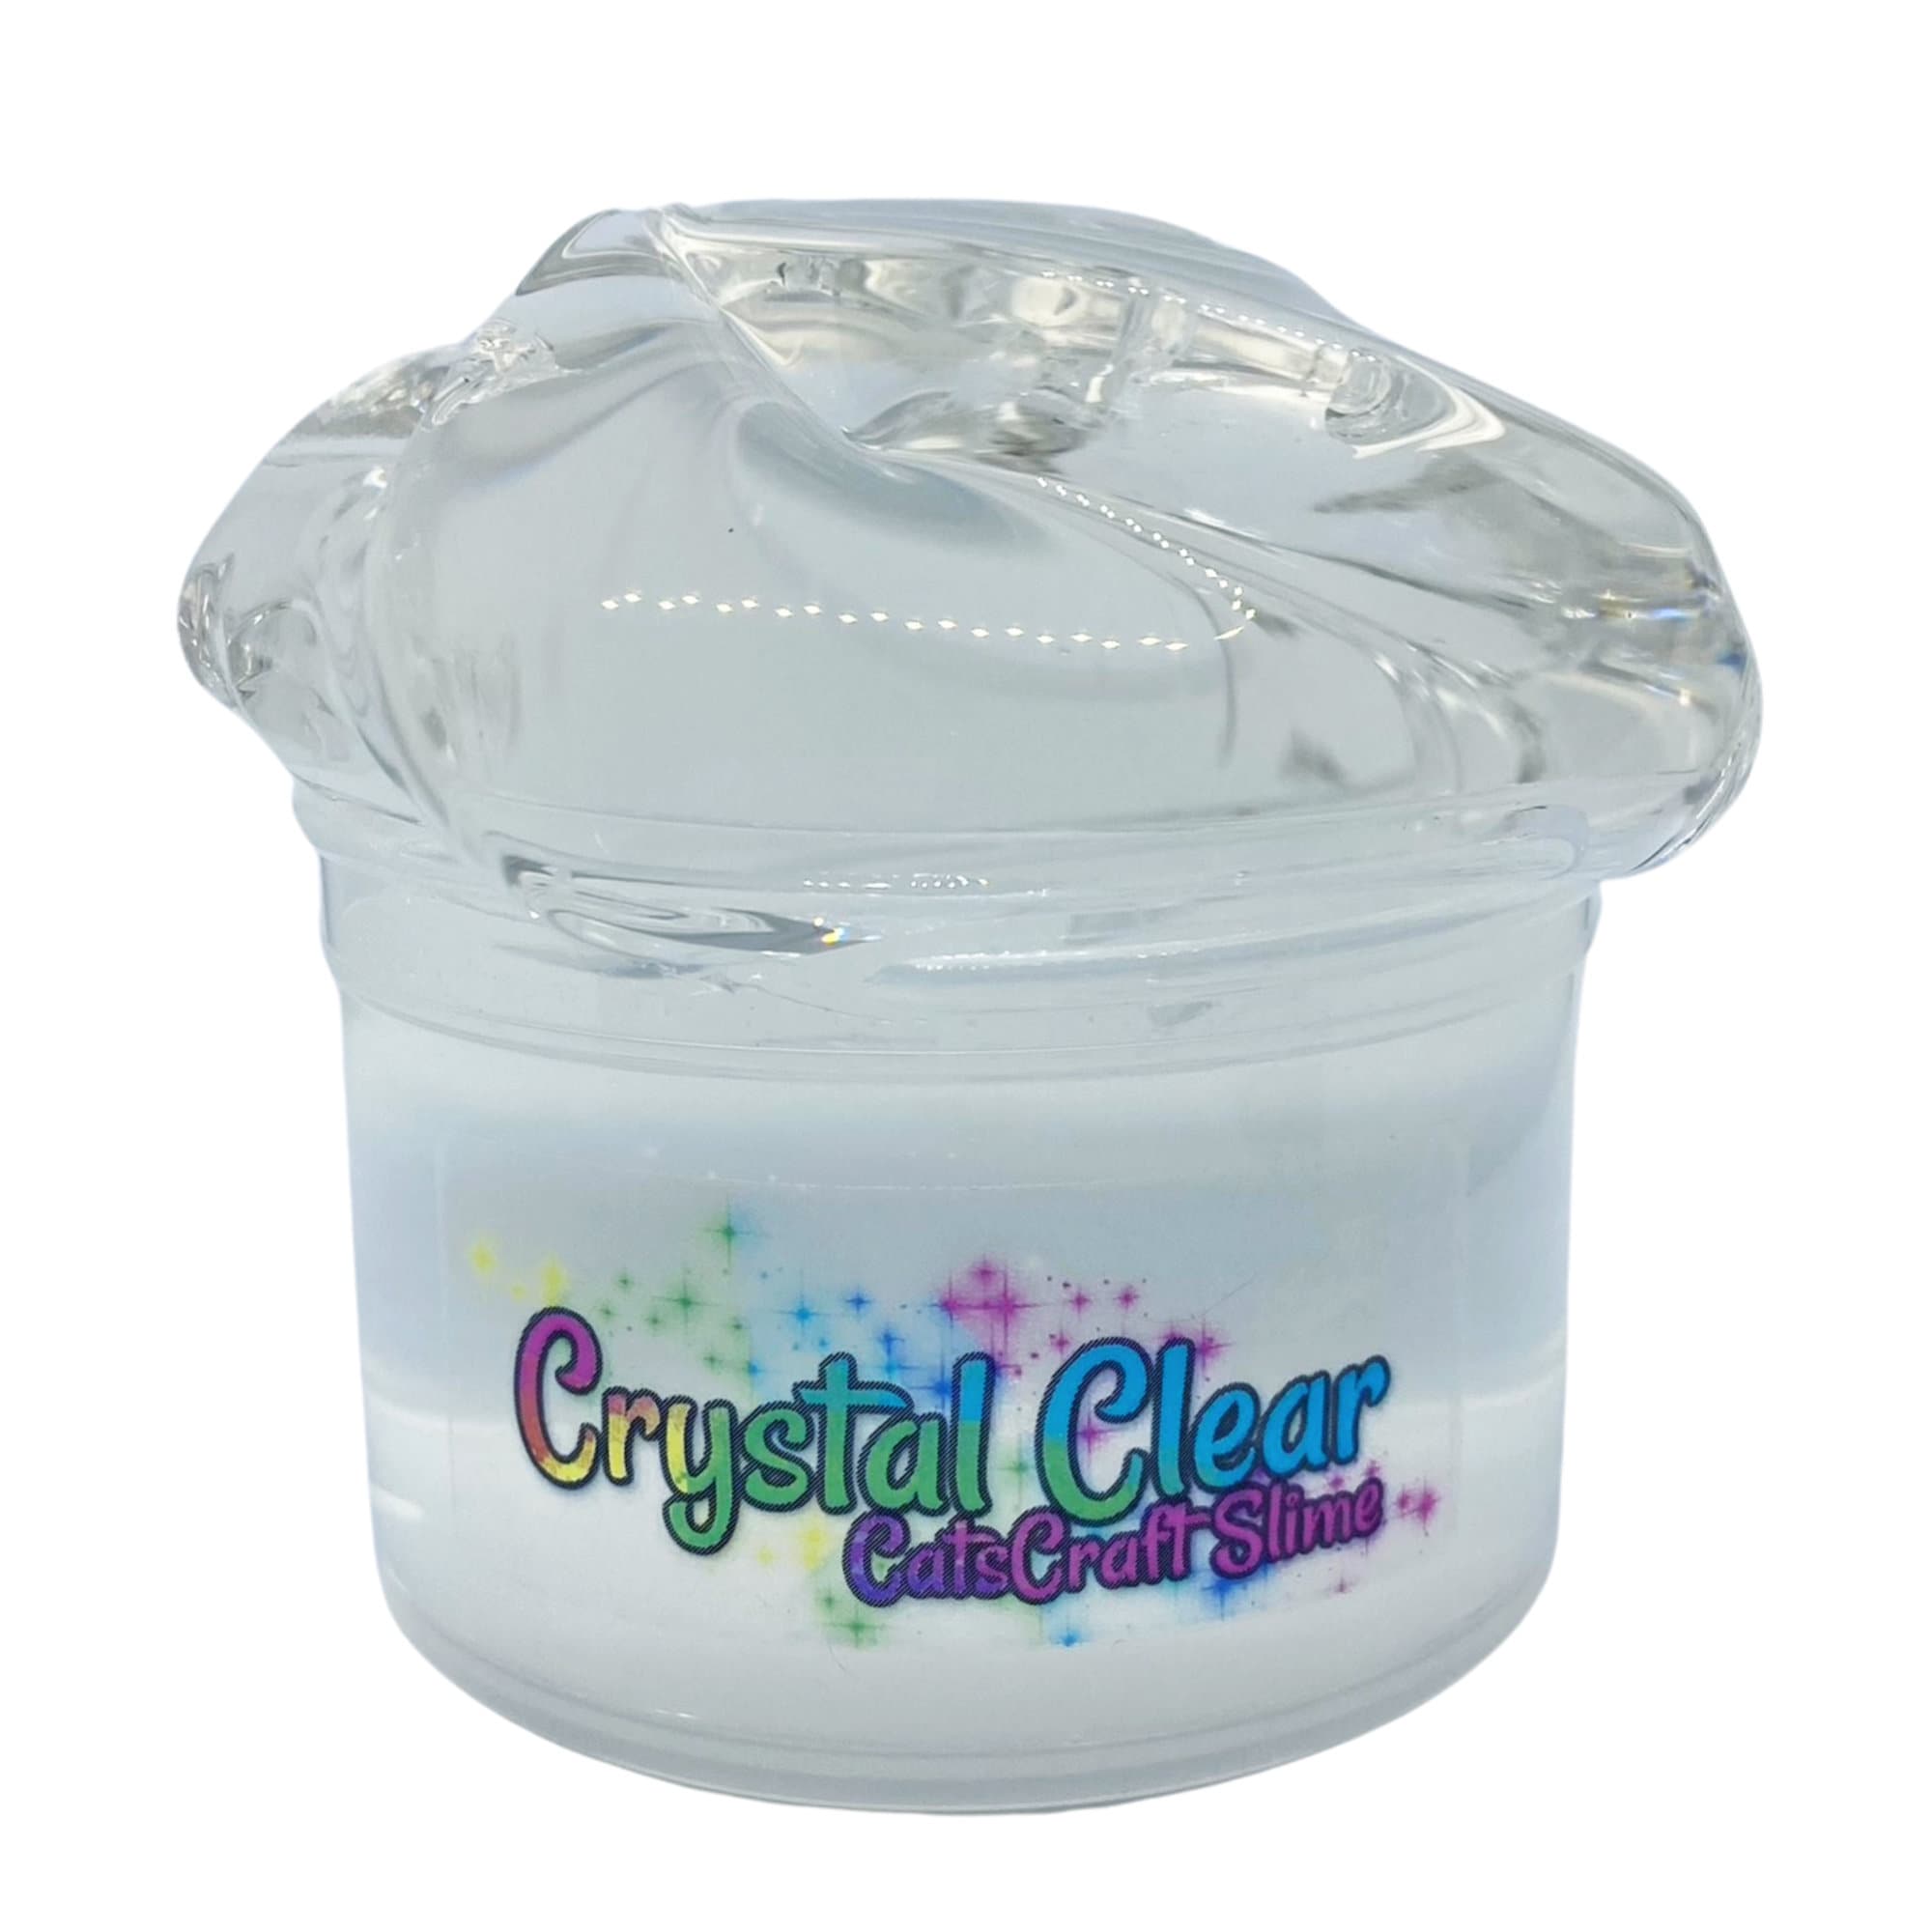 Clear Slime Glue 16.9 oz Jar